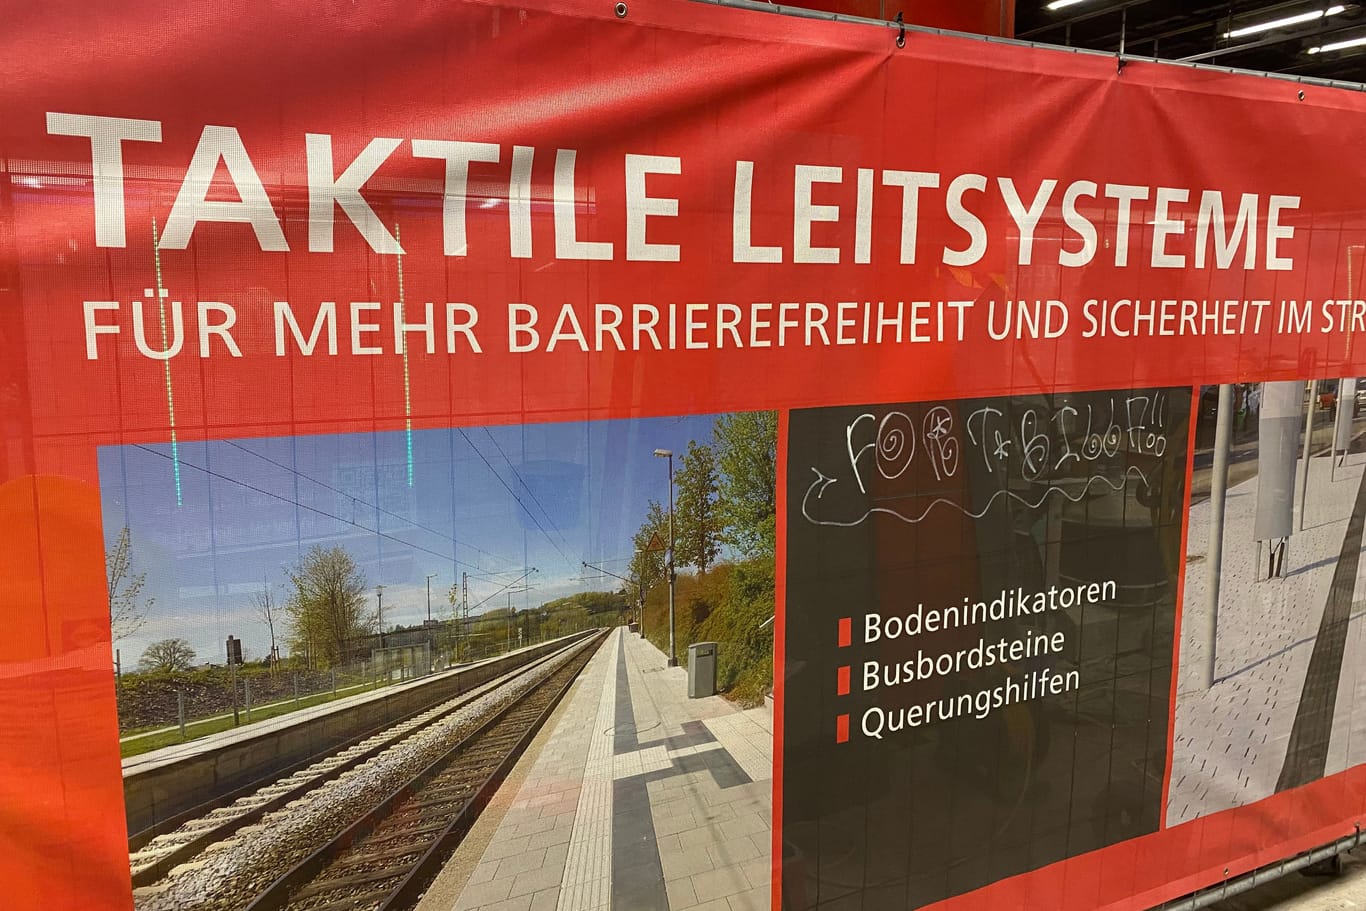 In München wird in den U-Bahnhöfen Stück für Stück das taktile Leitsystem erneuert.